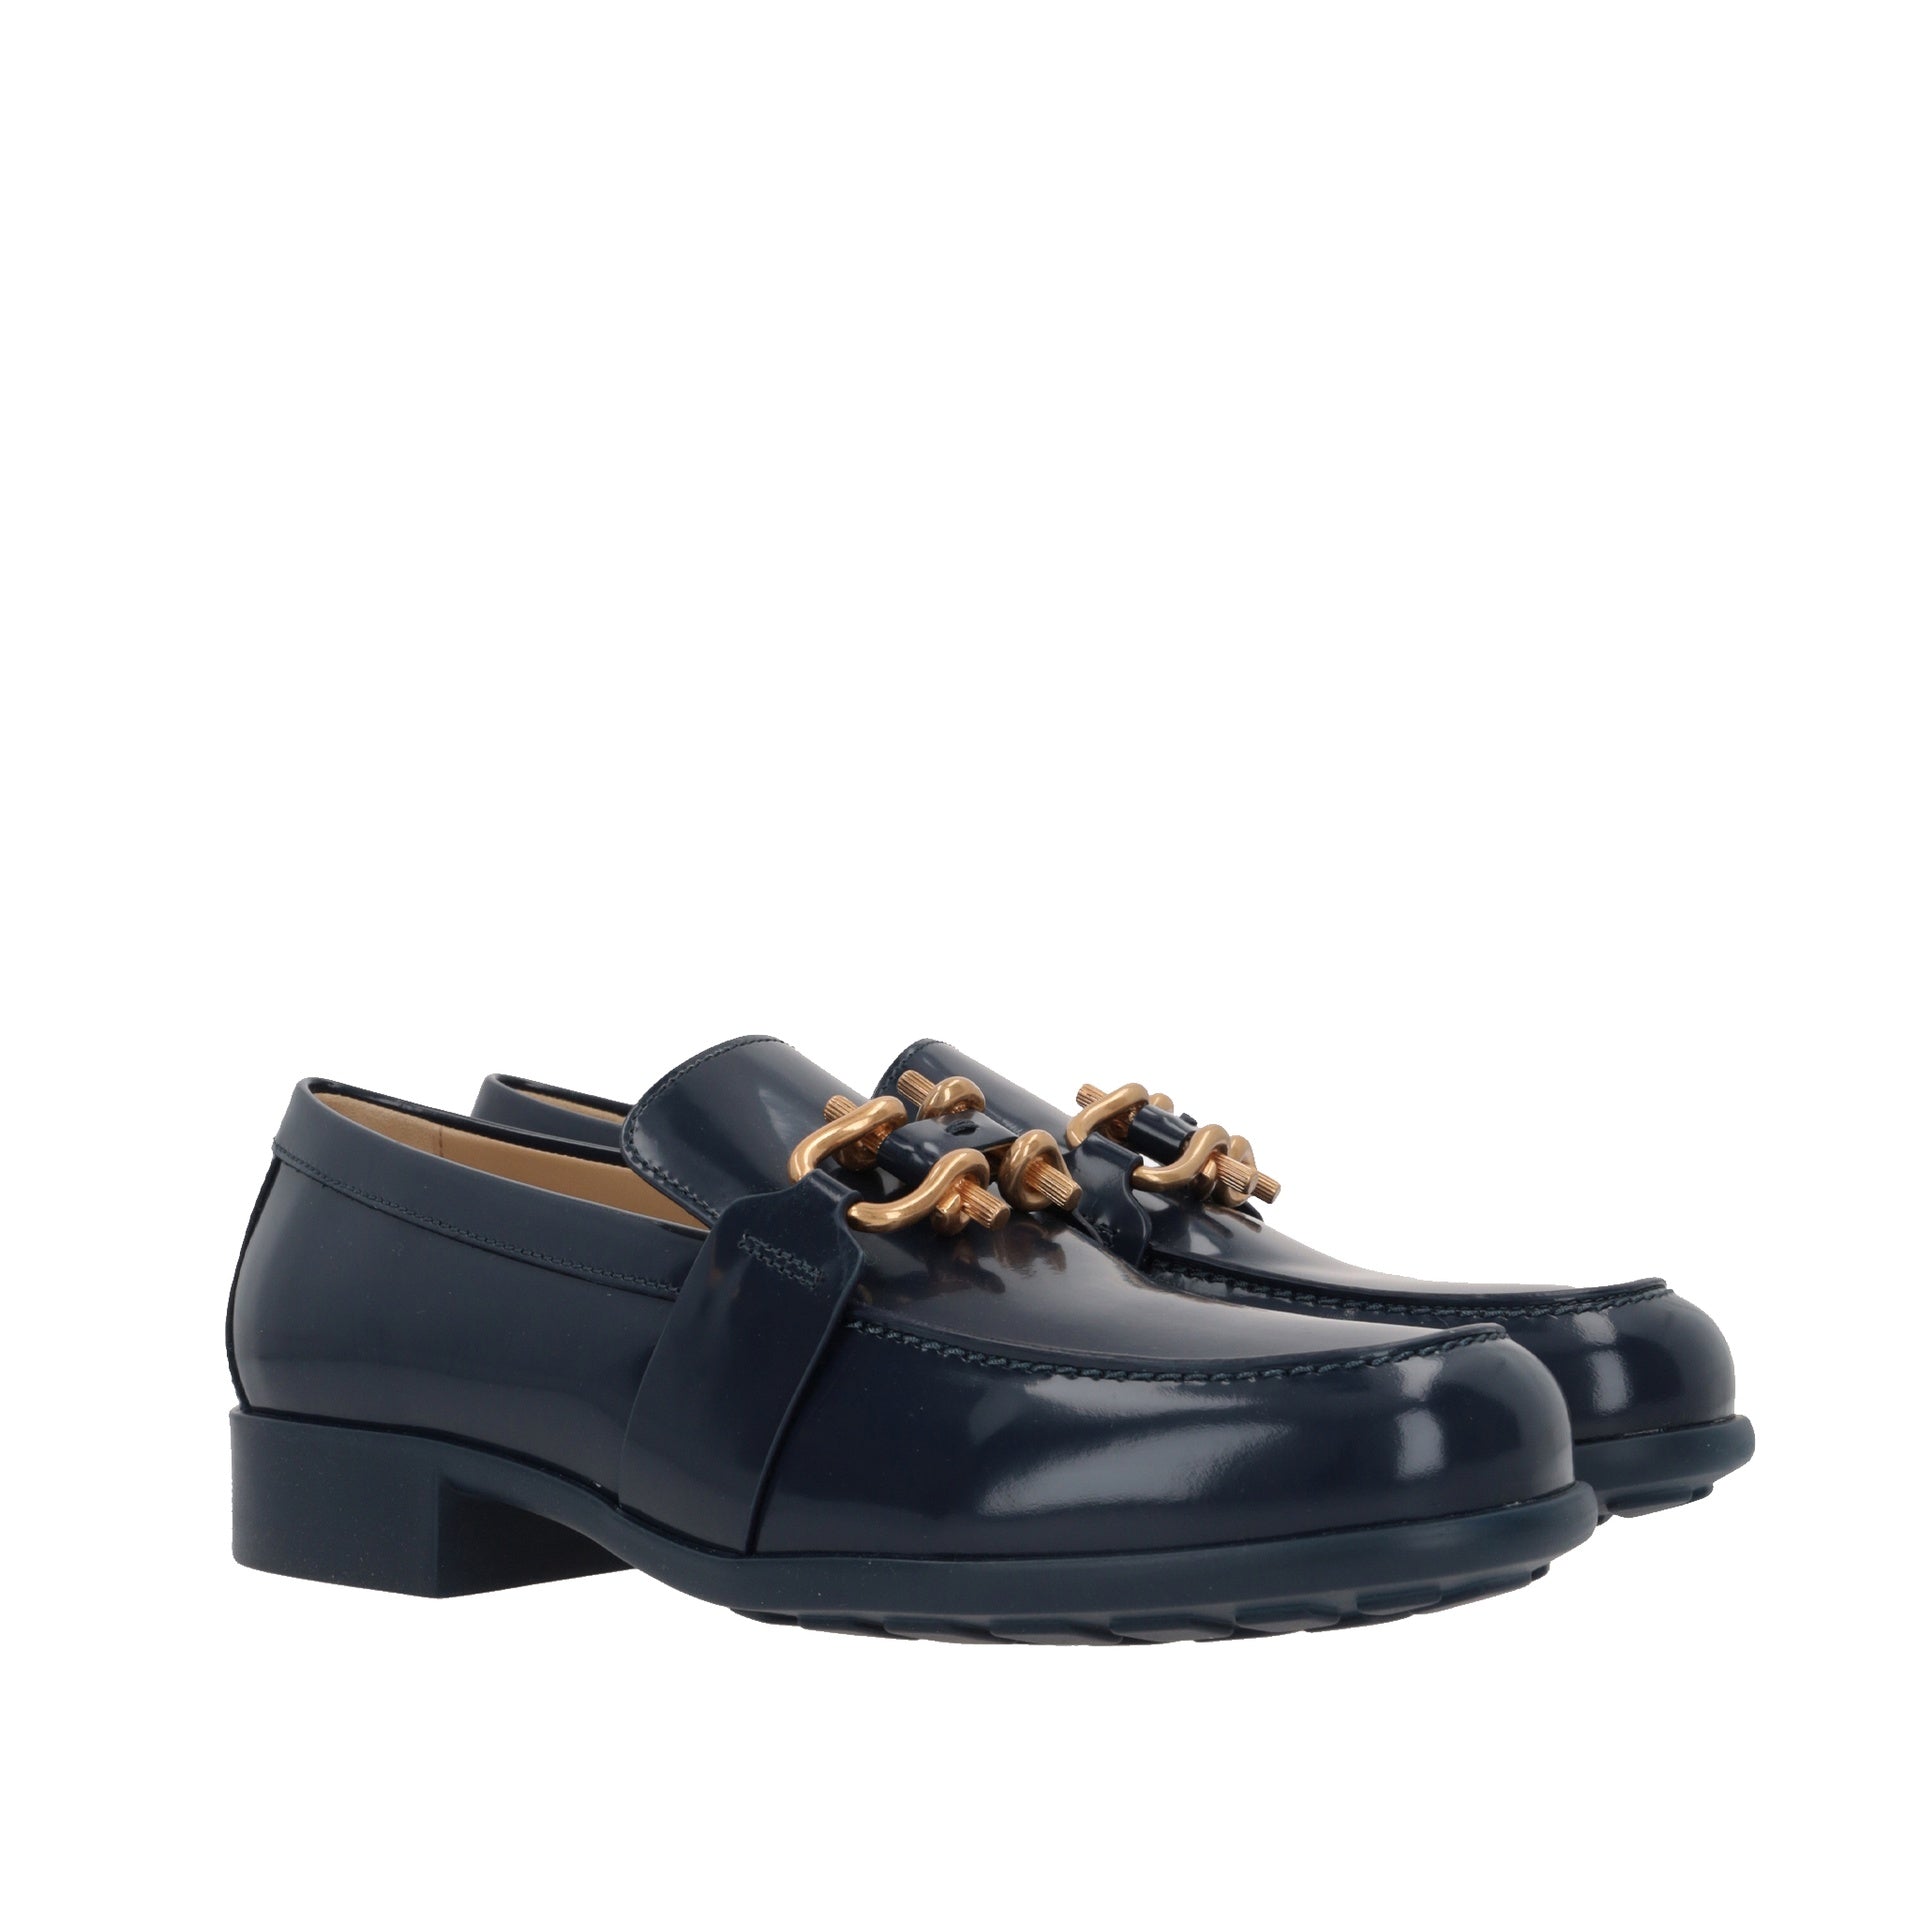 BOTTEGA VENETA-Bottega Veneta Monsieur Loafer Shoes-WOMEN SHOES-Outlet-Sale